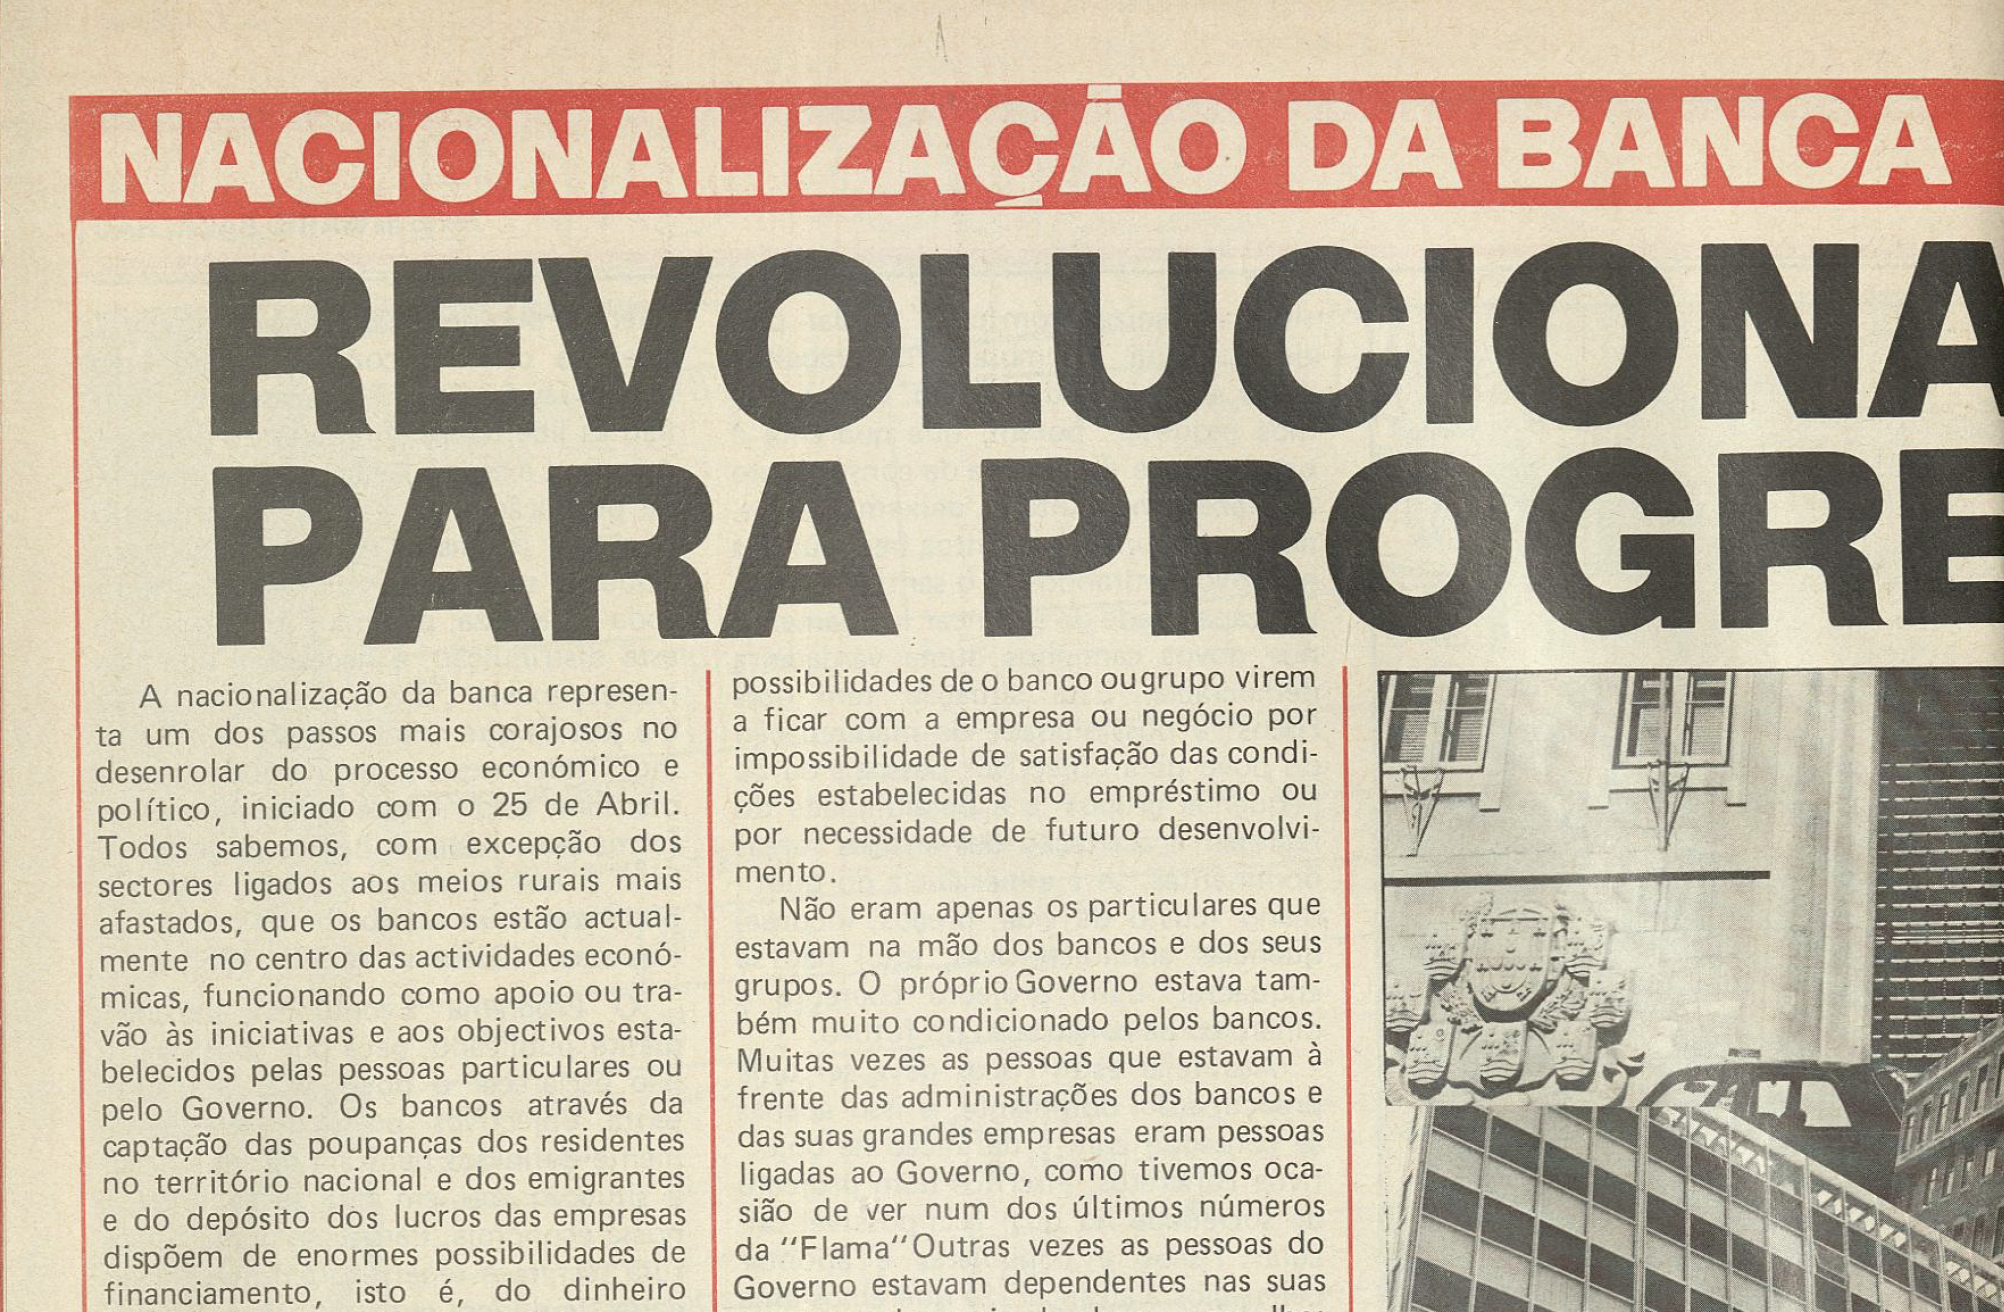 "Nacionalização da Banca: Revolucionar para progredir"